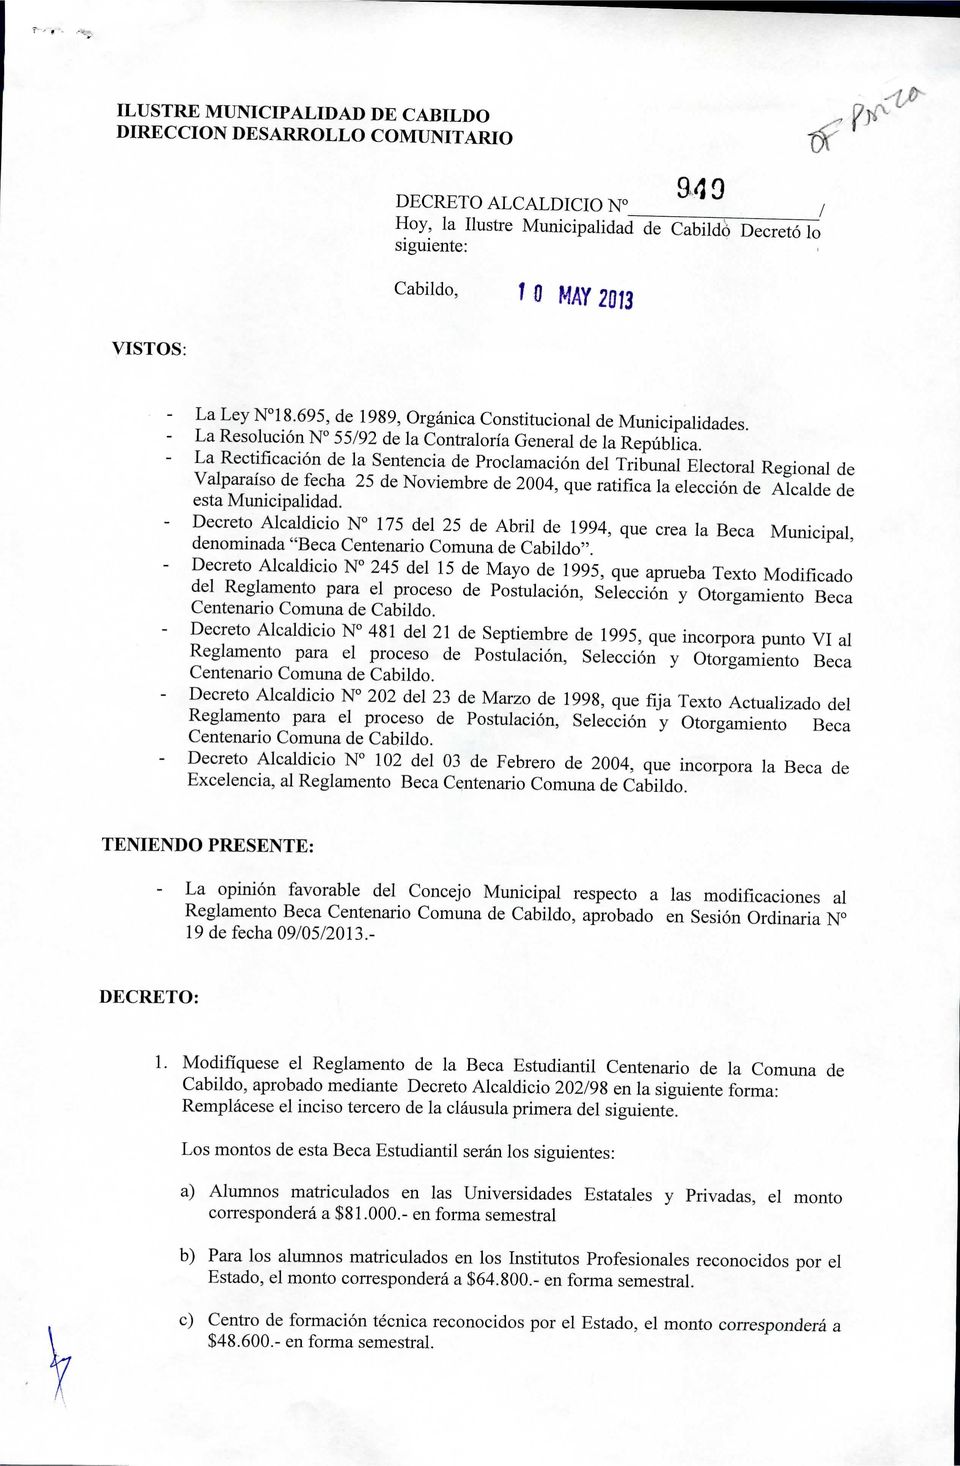 La Rectificación de la Sentencia de Proclamación del Tribunal Electoral Regional de Valparaíso de fecha 25 de Noviembre de 2004, que ratifica la elección de Alcalde de esta Municipalidad.